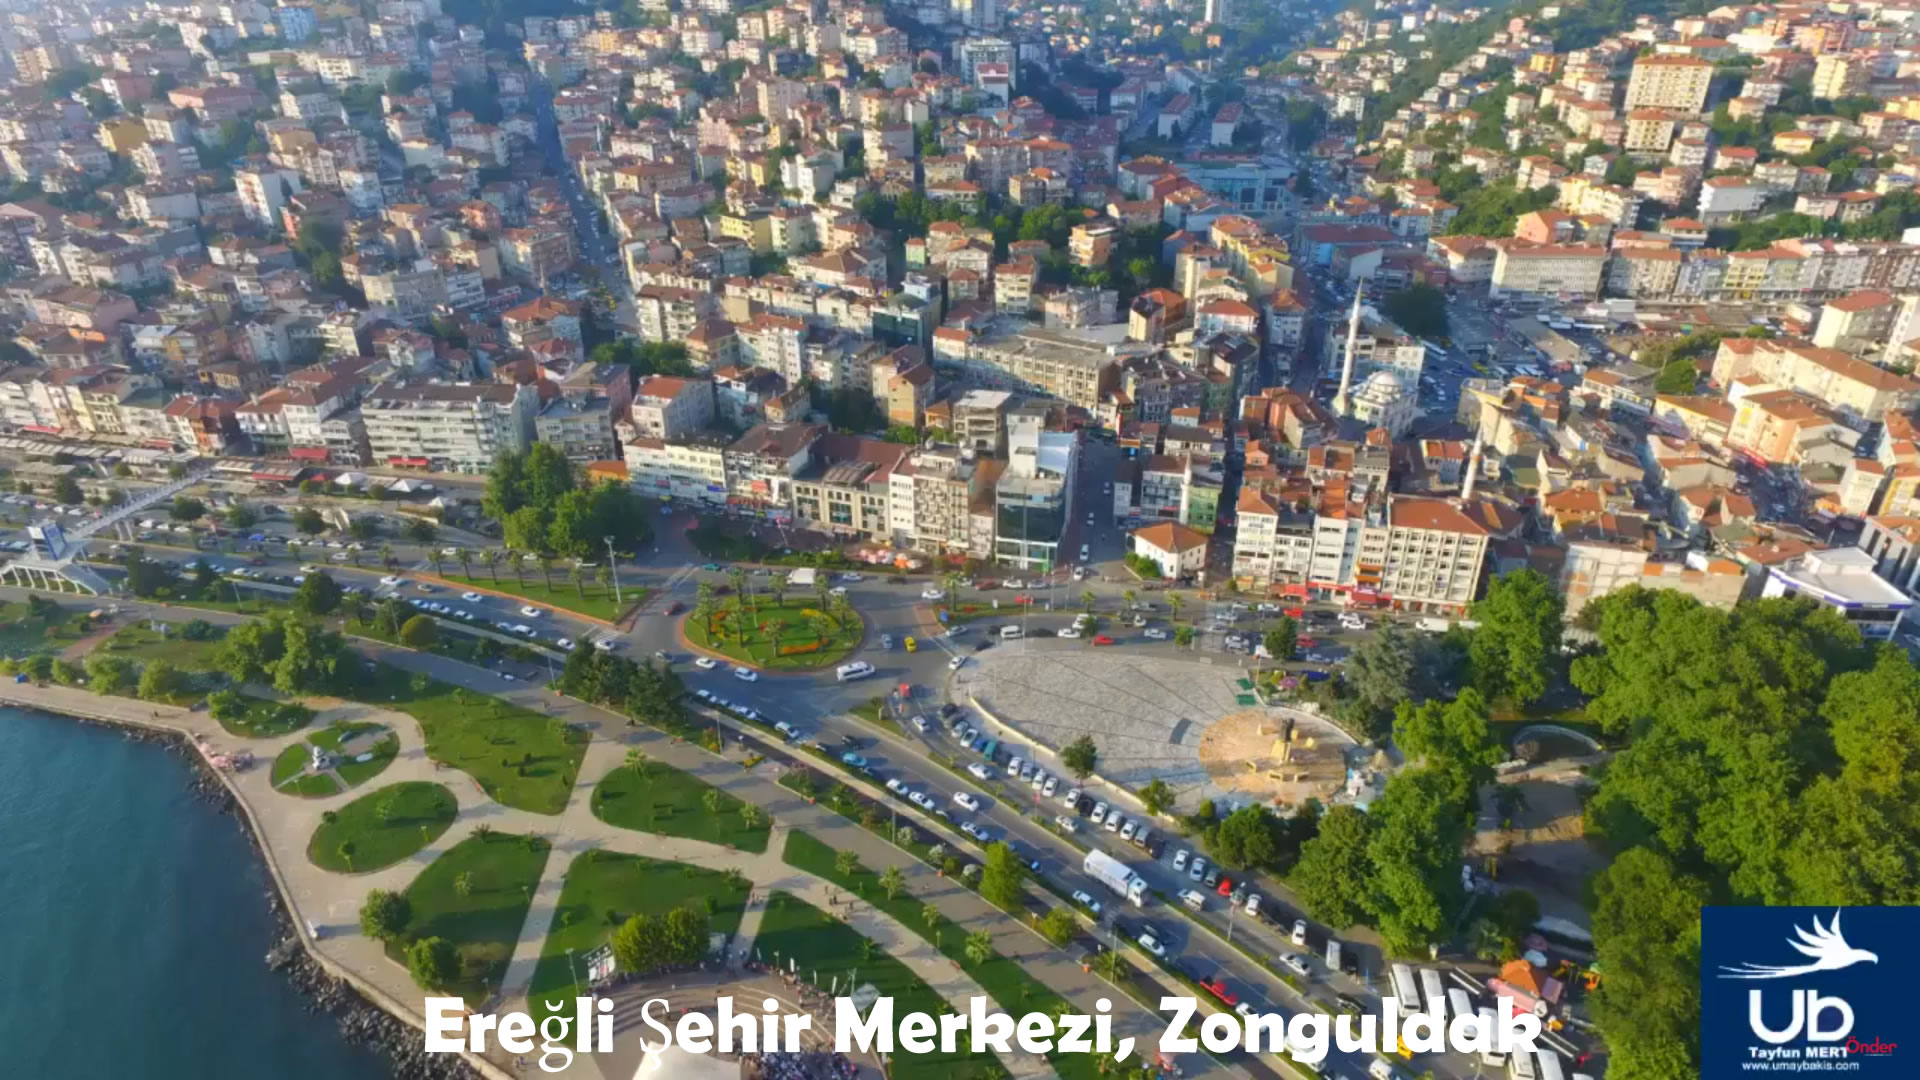 Ereğli Şehir Merkezi, Zonguldak